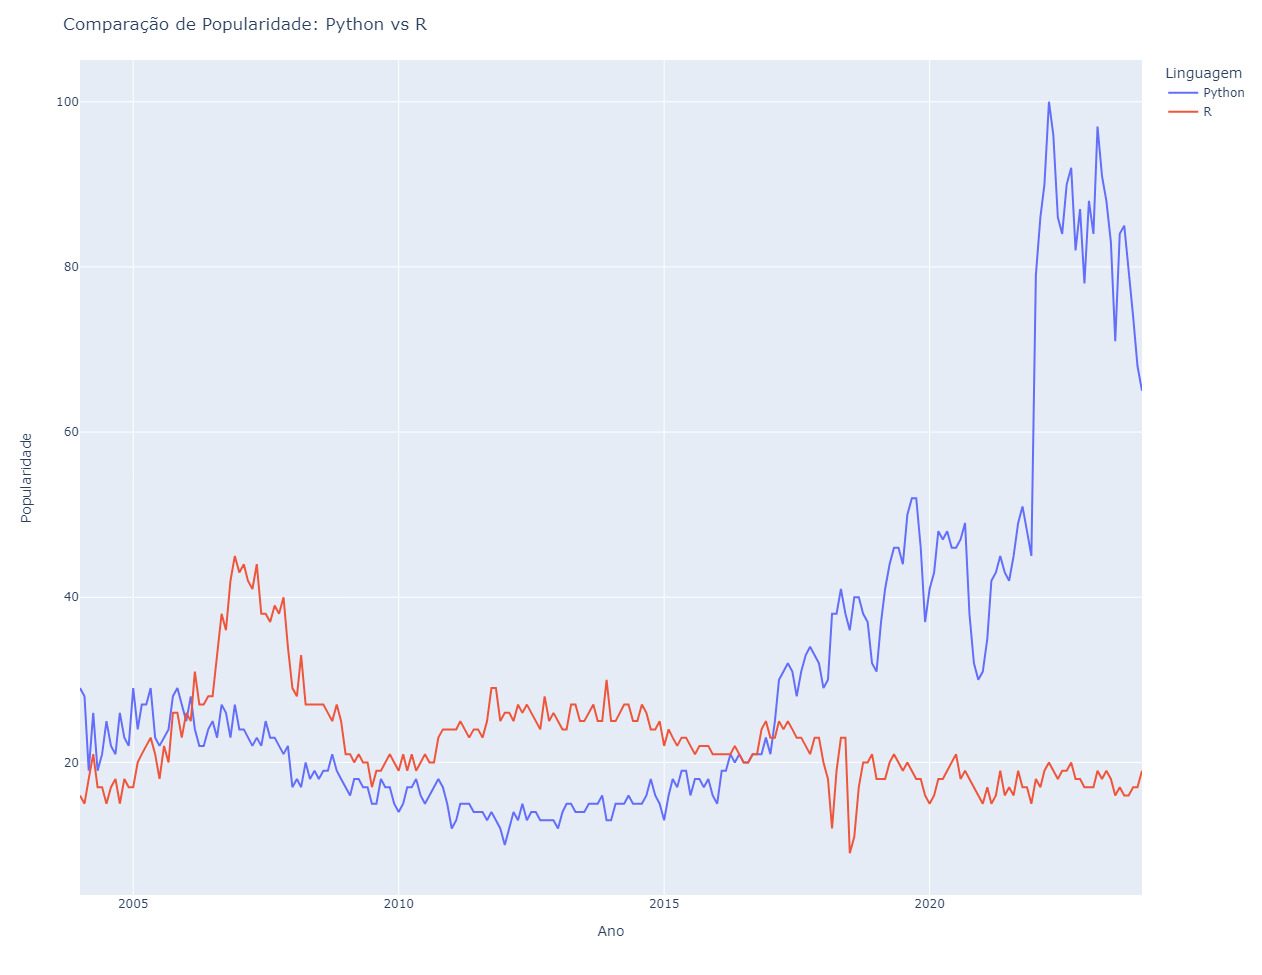 Gráfico de linhas na qual o eixo X constam os anos de 2005 a 2020. E no Eixo Y, uma escala de popularidade mostrando a tendência de popularidade ao longo do tempo, com Python aumentando significativamente e R permanecendo mais estável no eixo X.